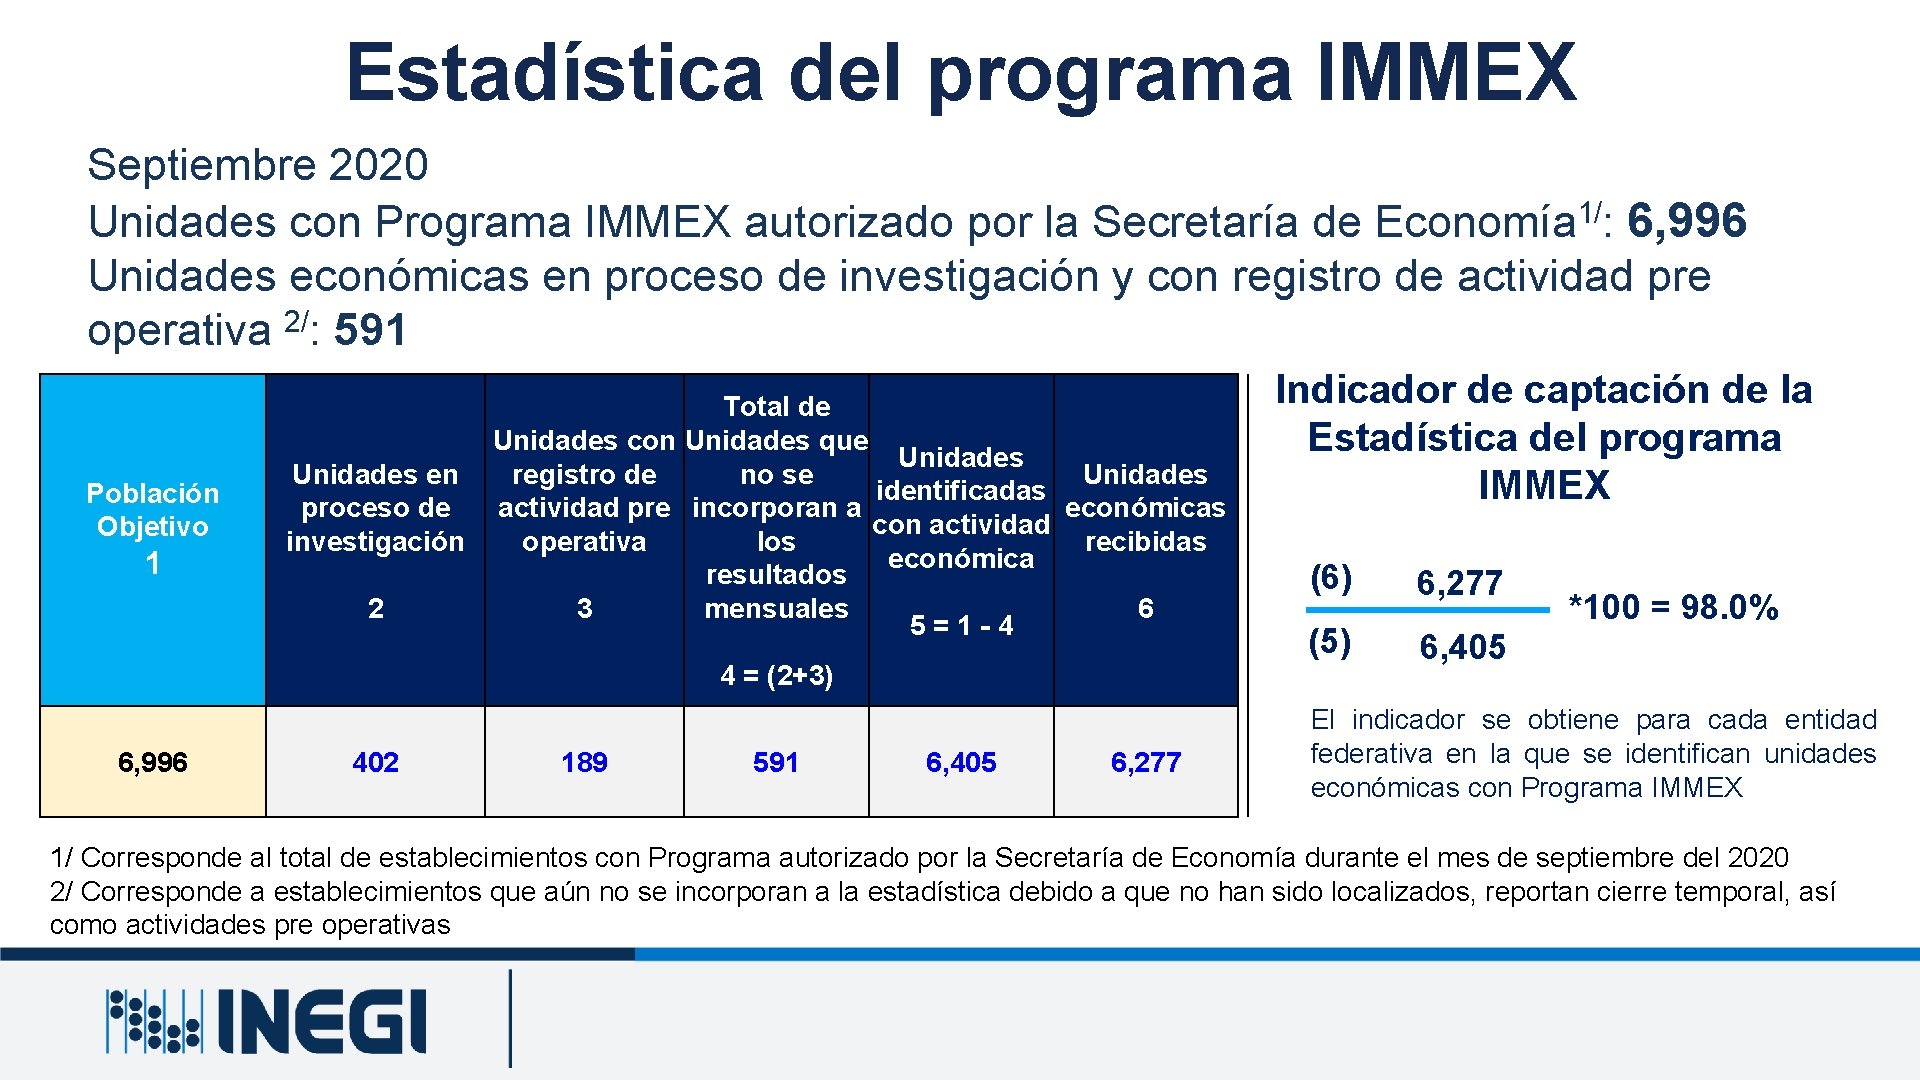 Estadística del programa IMMEX Septiembre 2020 1/ Unidades con Programa IMMEX autorizado por la